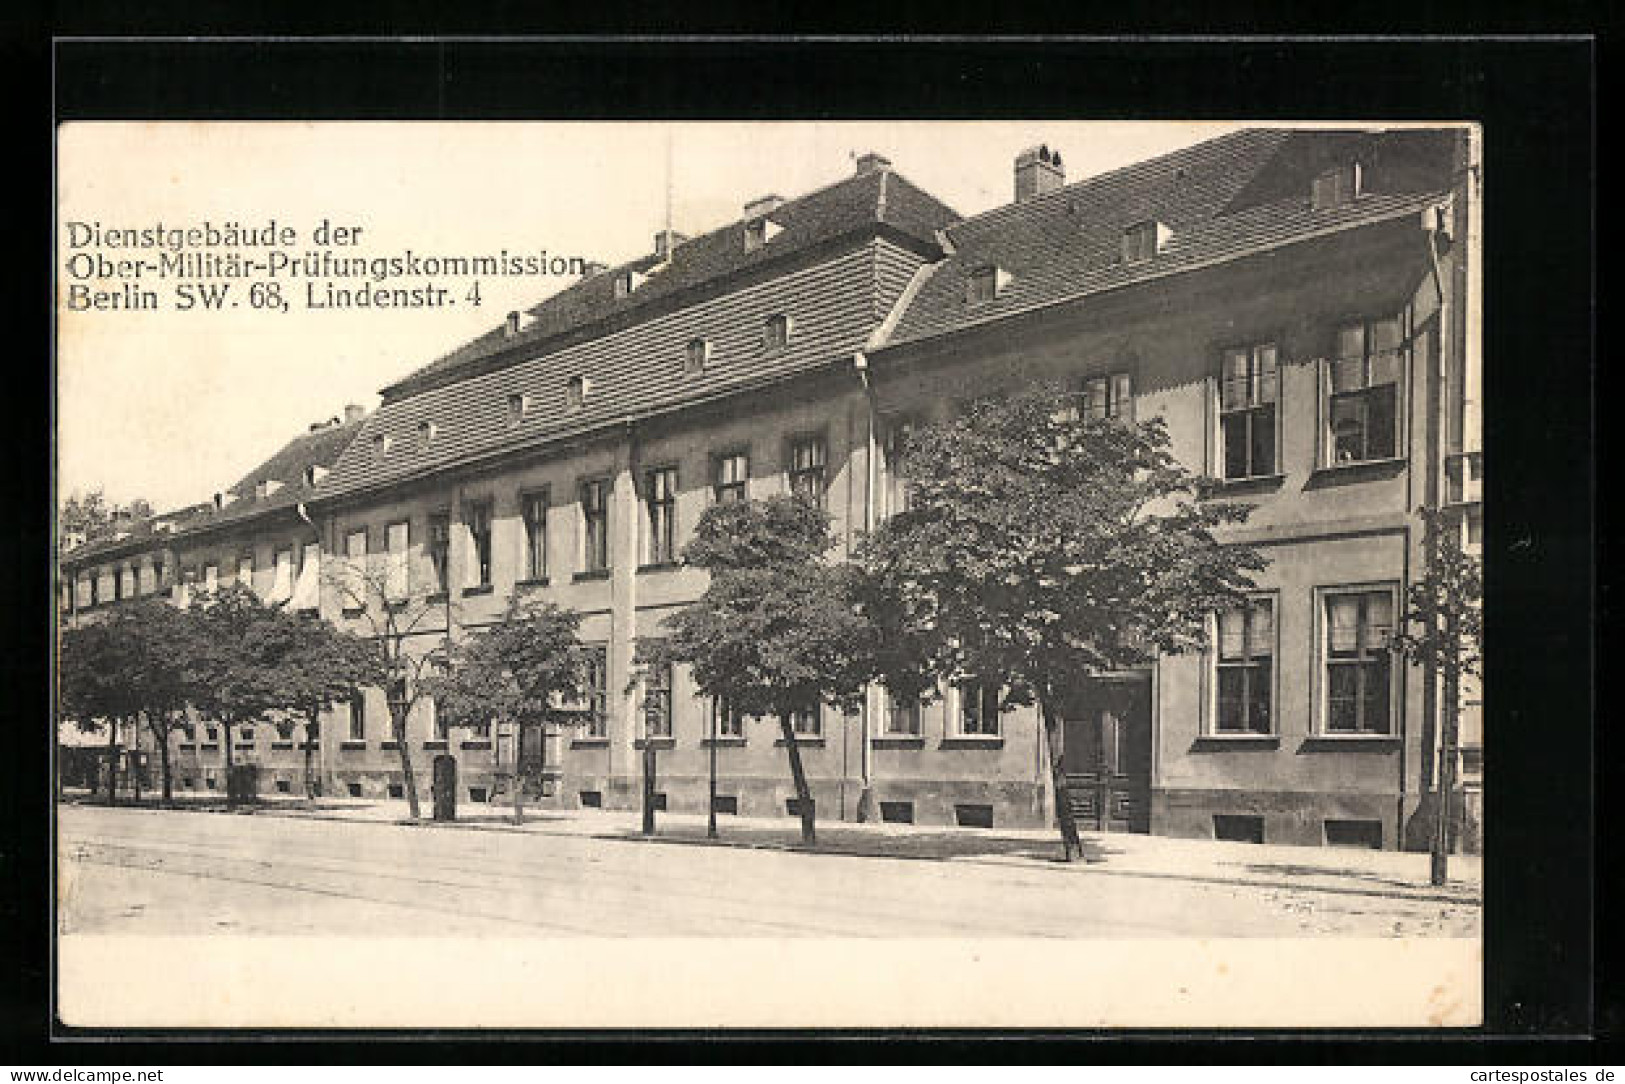 AK Berlin, Dienstgebäude Der Ober-Militär-Prüfungskommision, Lindenstrasse 4  - Kreuzberg